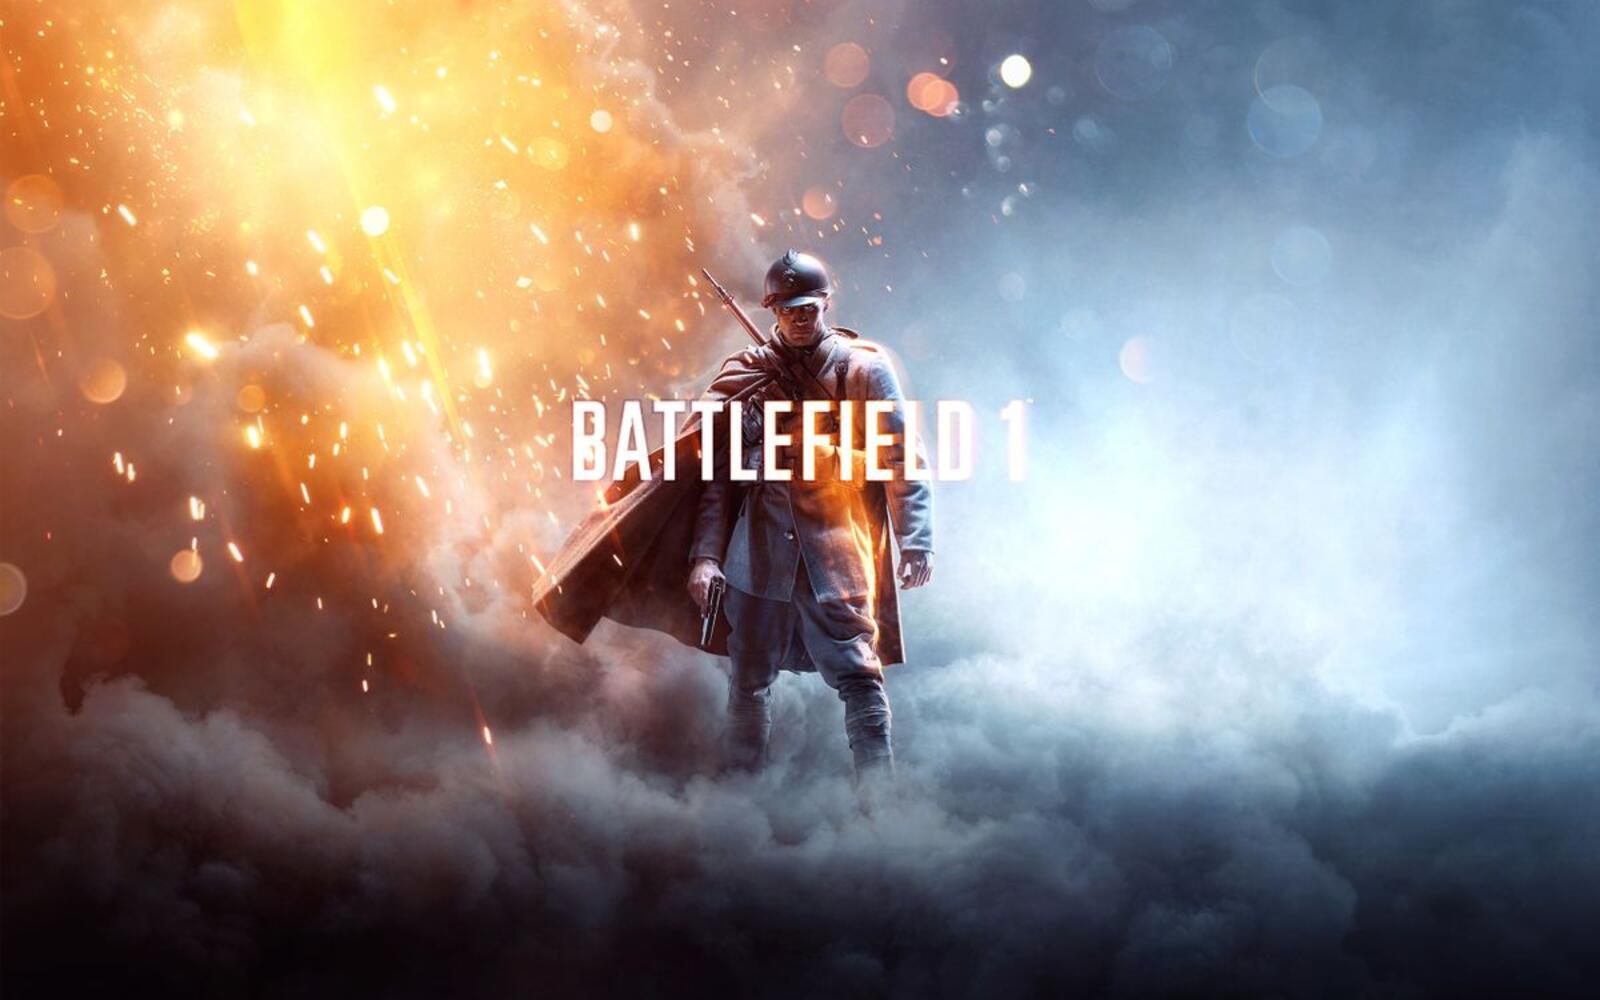 Wallpapers Battlefield 1 explosion smoke on the desktop